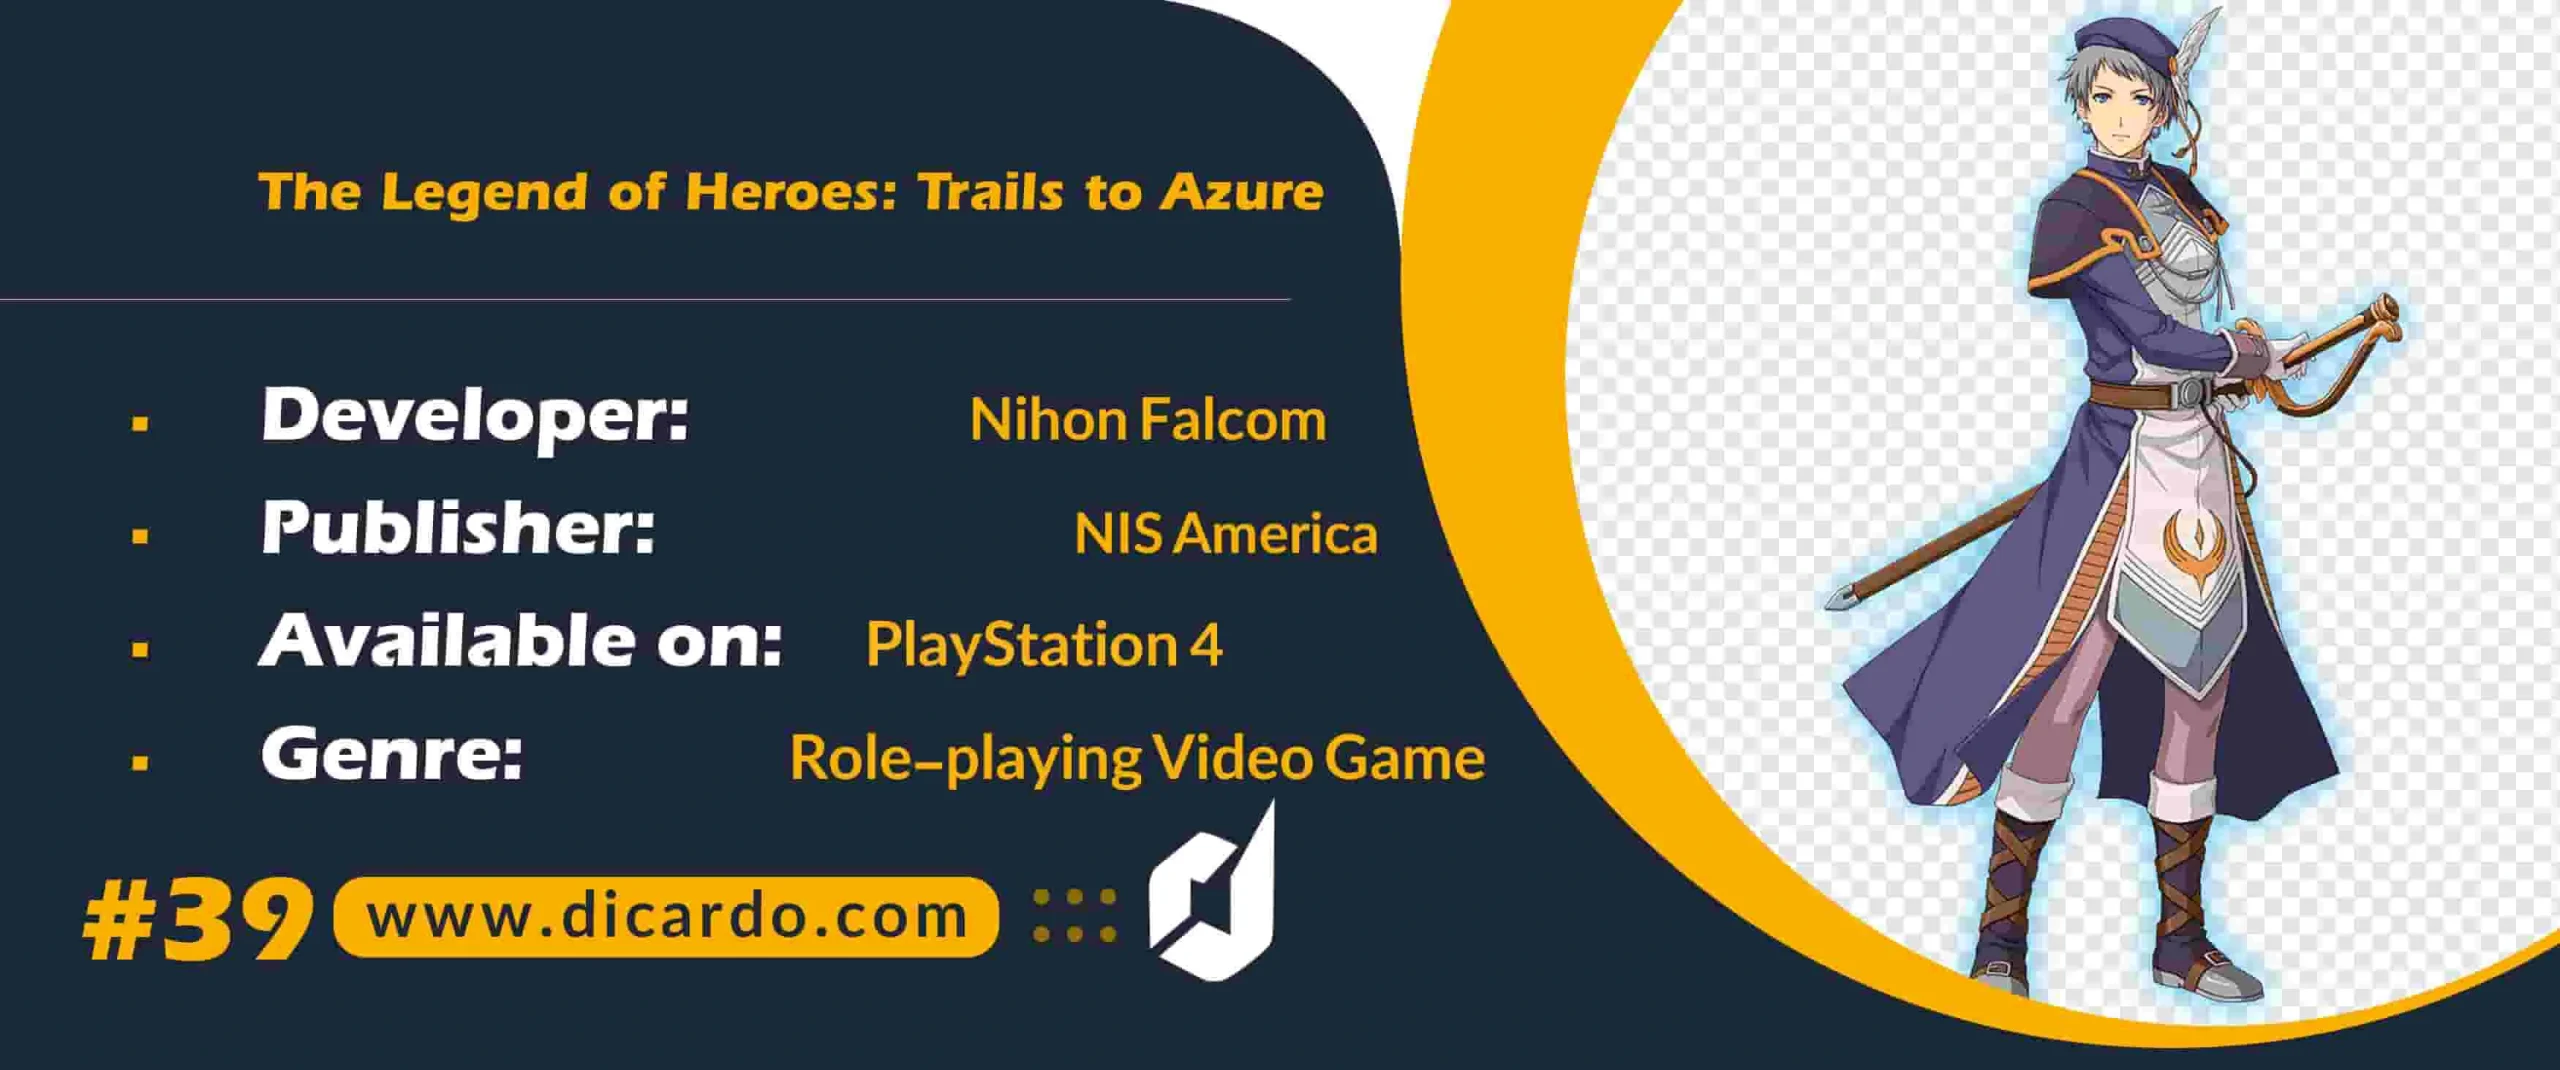 #39 د لجند آو هیروز تریلز تو آزور The Legend of Heroes: Trails to Azure